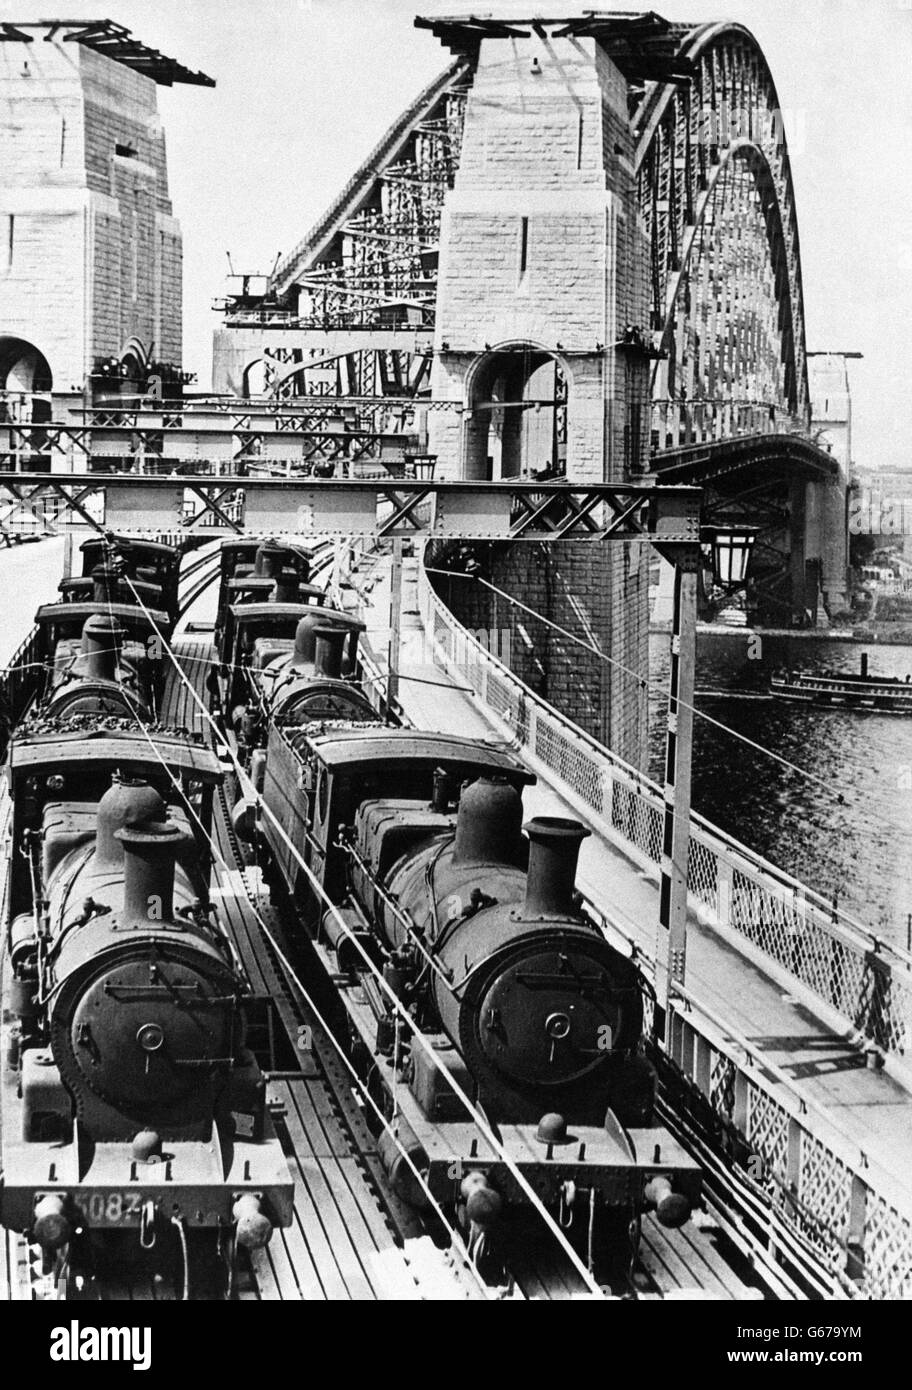 Eisenbahnen der britischen Empire - Australien - Sydney - 1932 Stockfoto